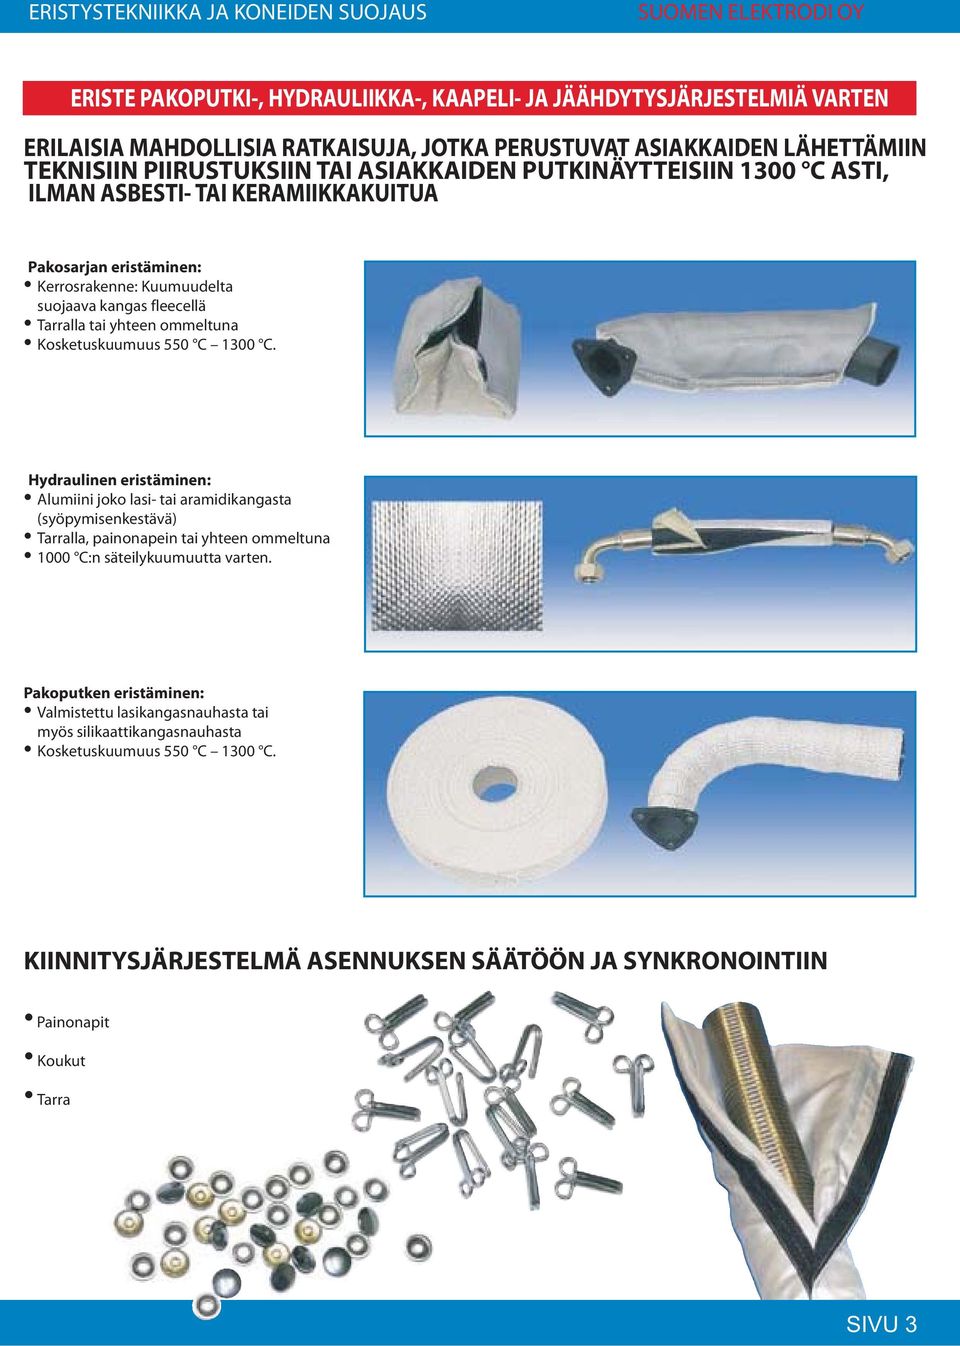 550 C 1300 C. Hydraulinen eristäminen: Alumiini joko lasi- tai aramidikangasta (syöpymisenkestävä) Tarralla, painonapein tai yhteen ommeltuna 1000 C:n säteilykuumuutta varten.